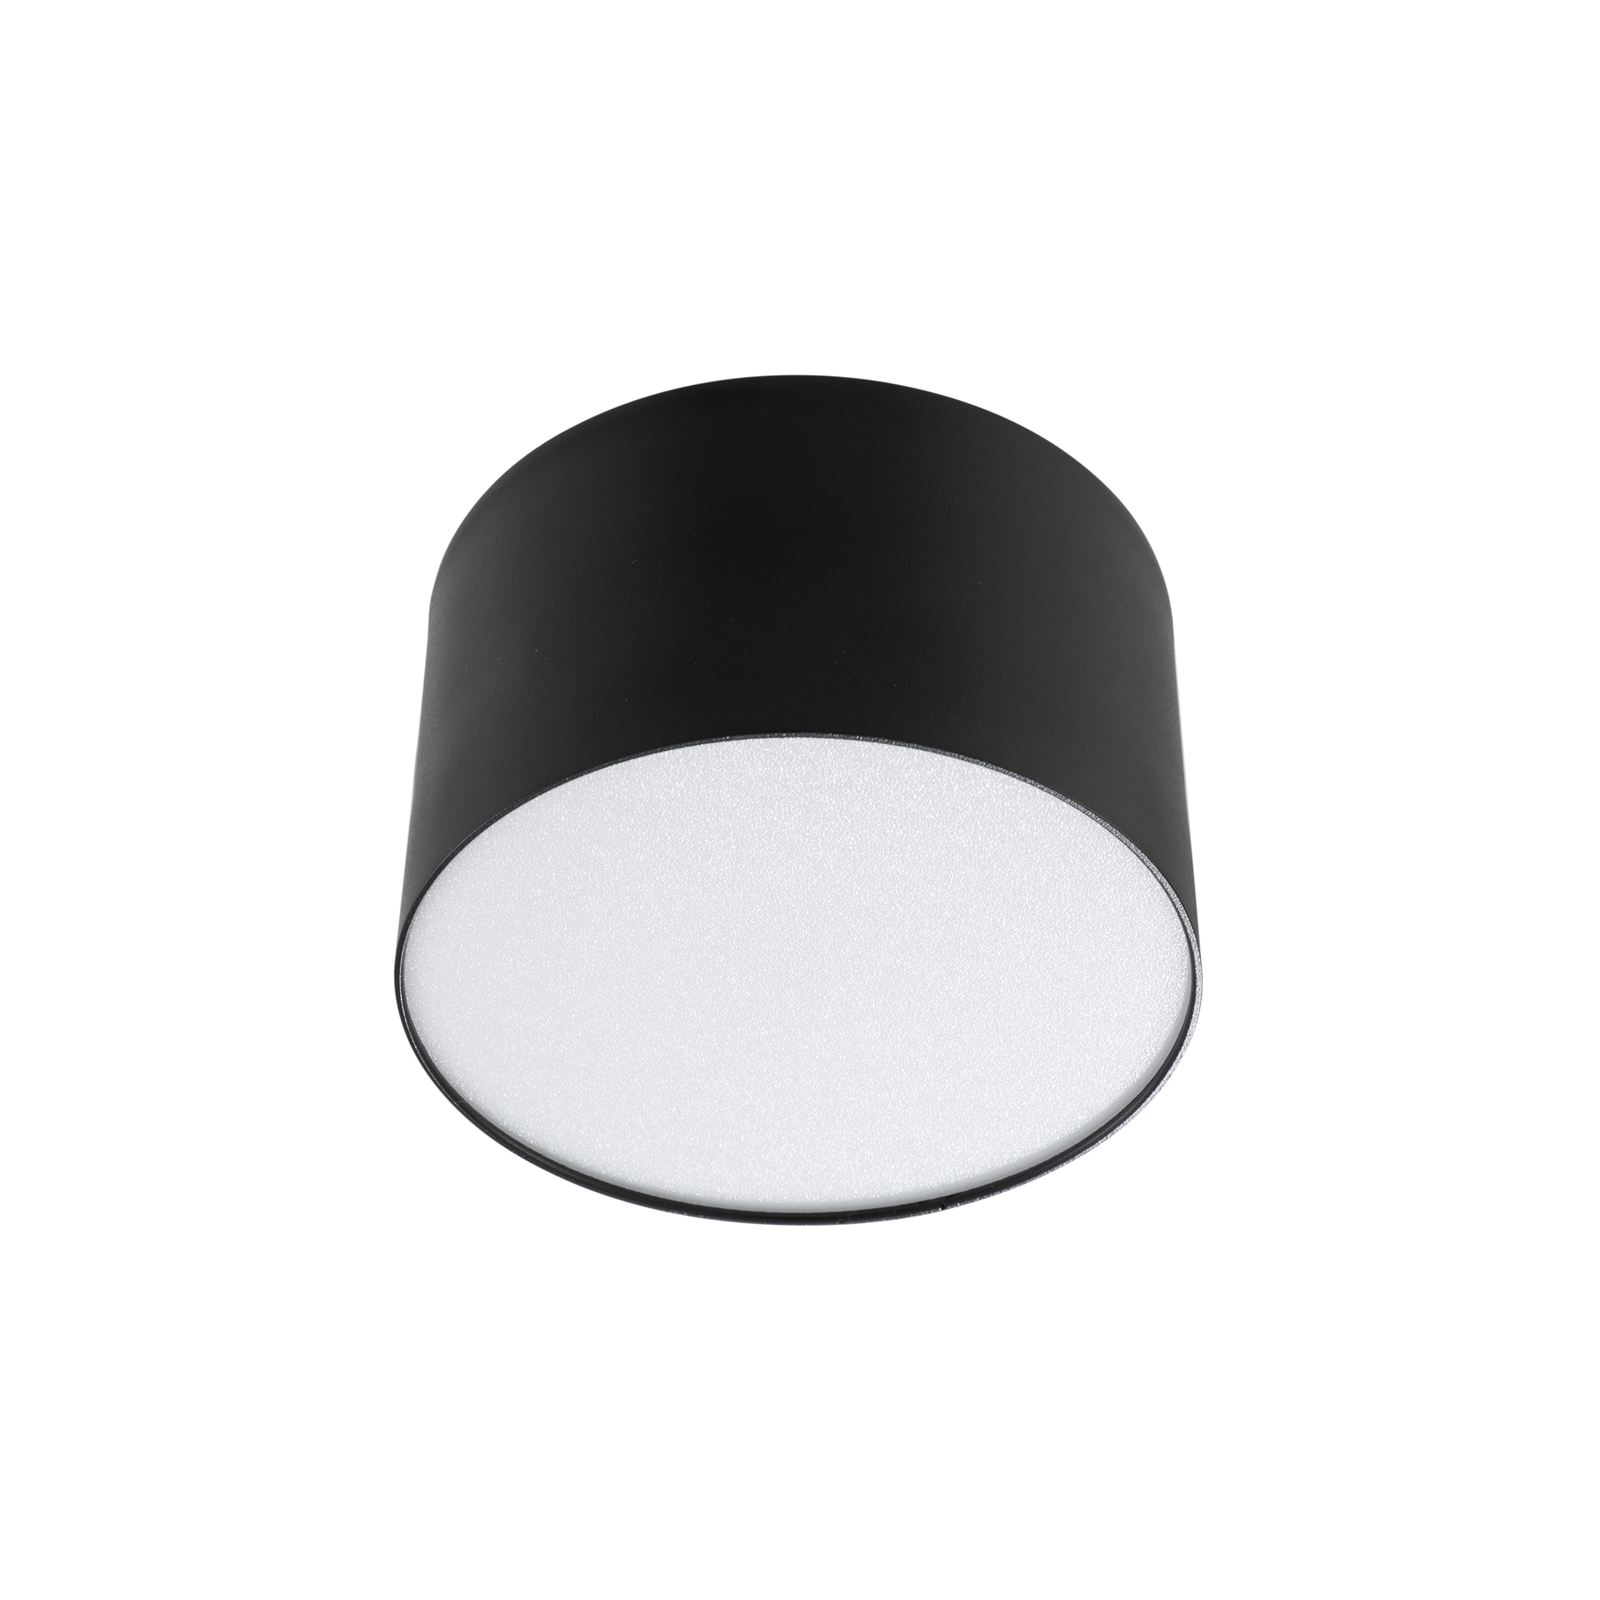 Reflektor LED Lindby Nivoria, 11 x 6,5 cm, piaskowy czarny